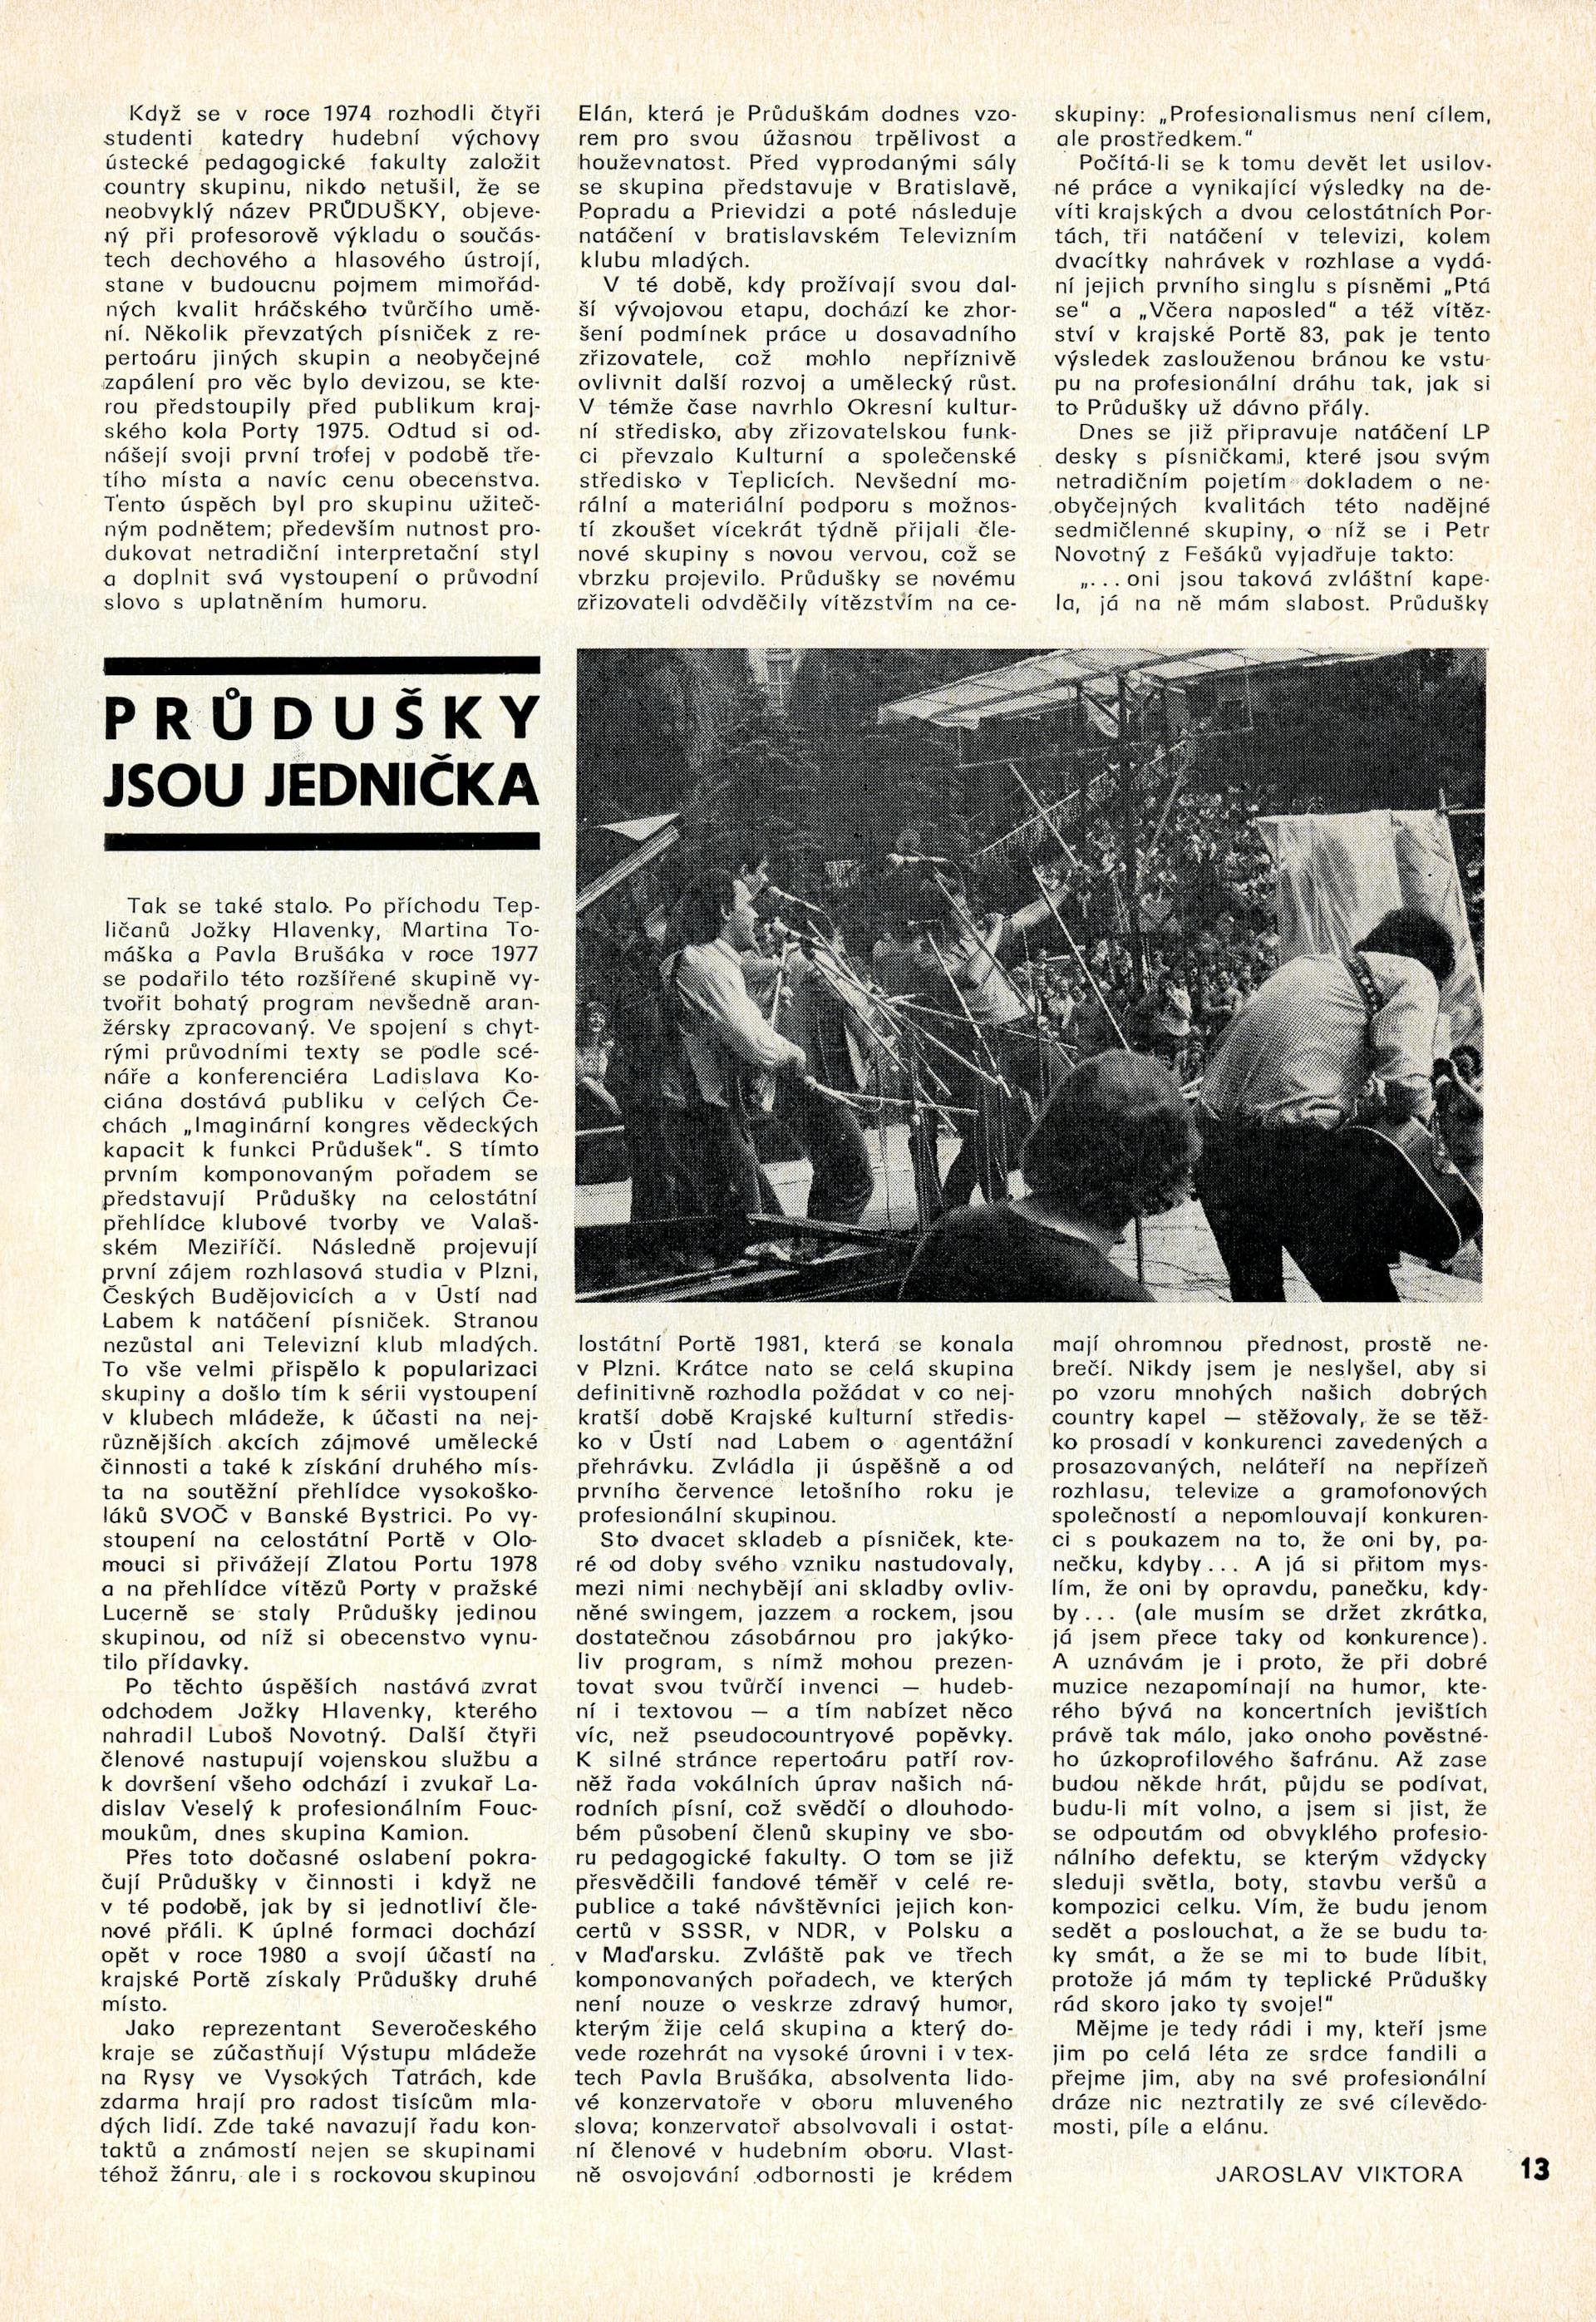 Průdušky jsou jednička, článek z roku 1984